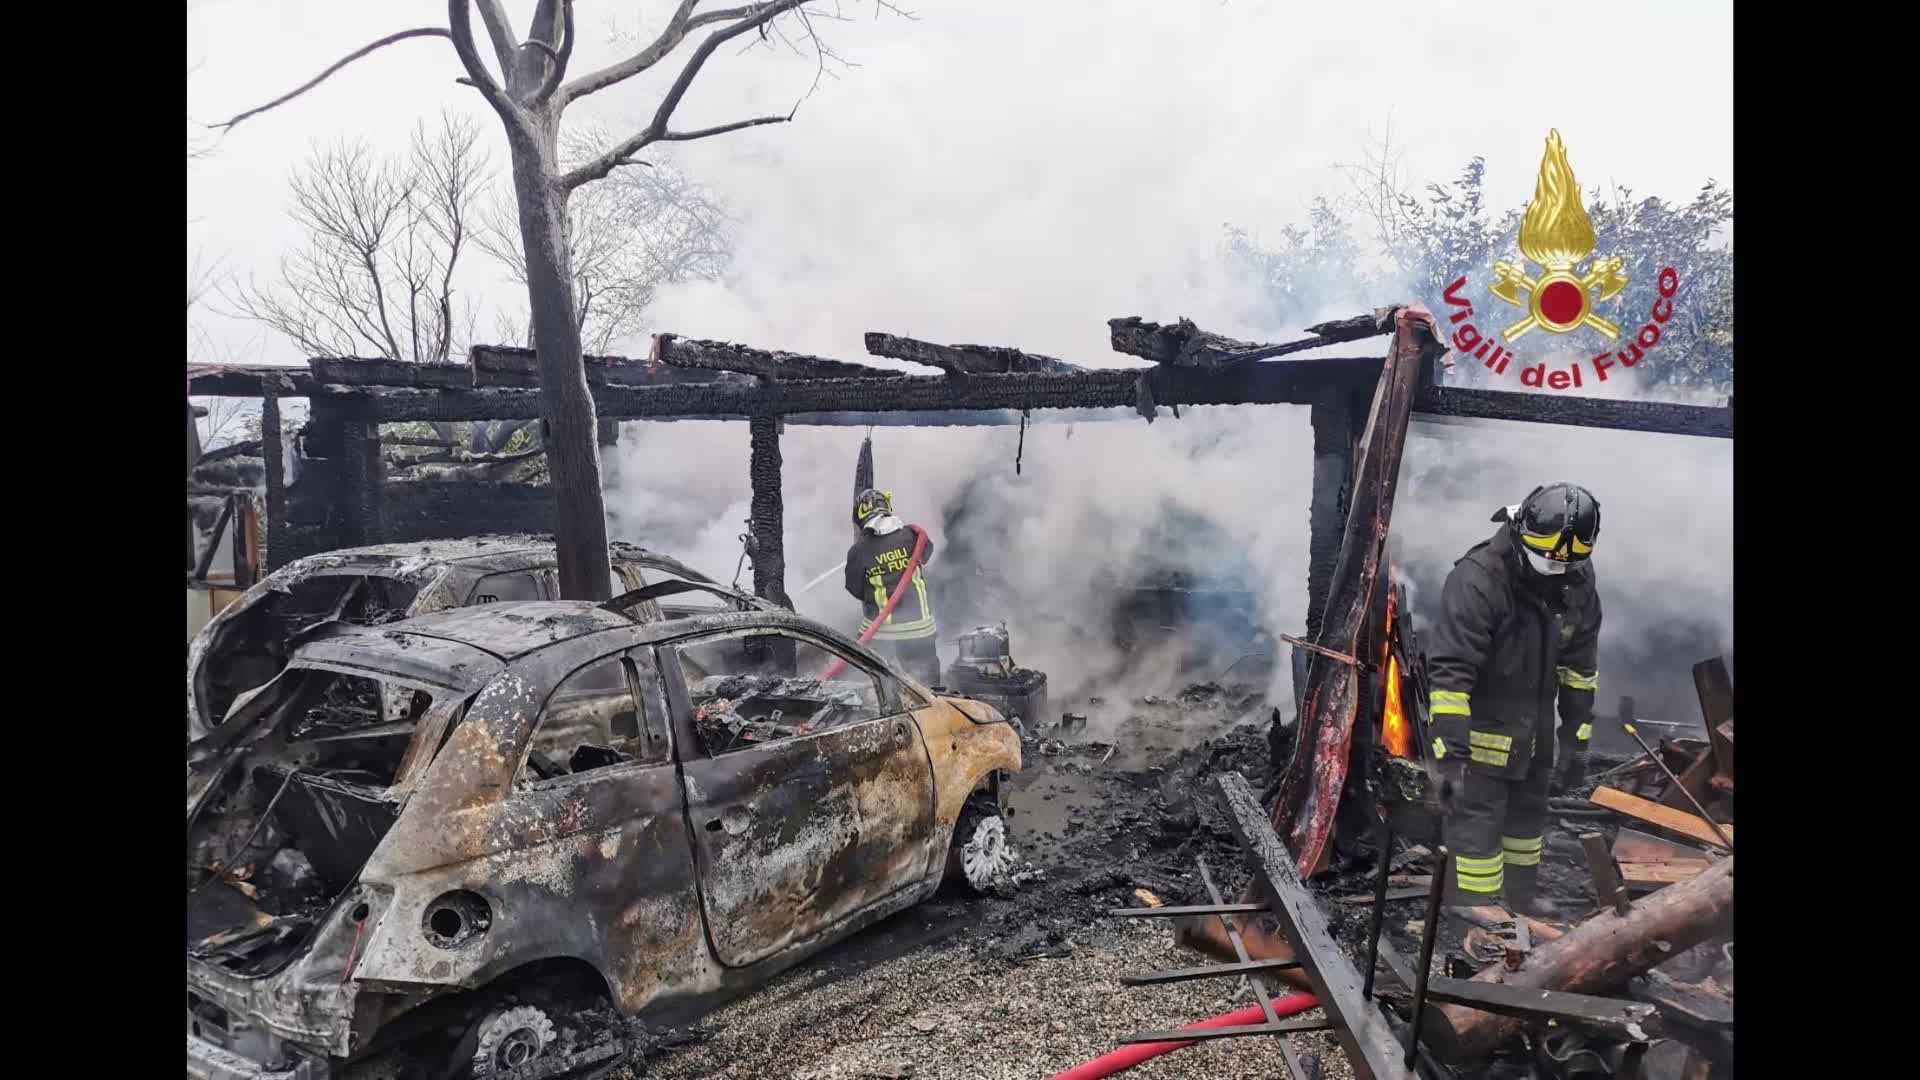 Incendio in una legnaia. Distrutte due auto